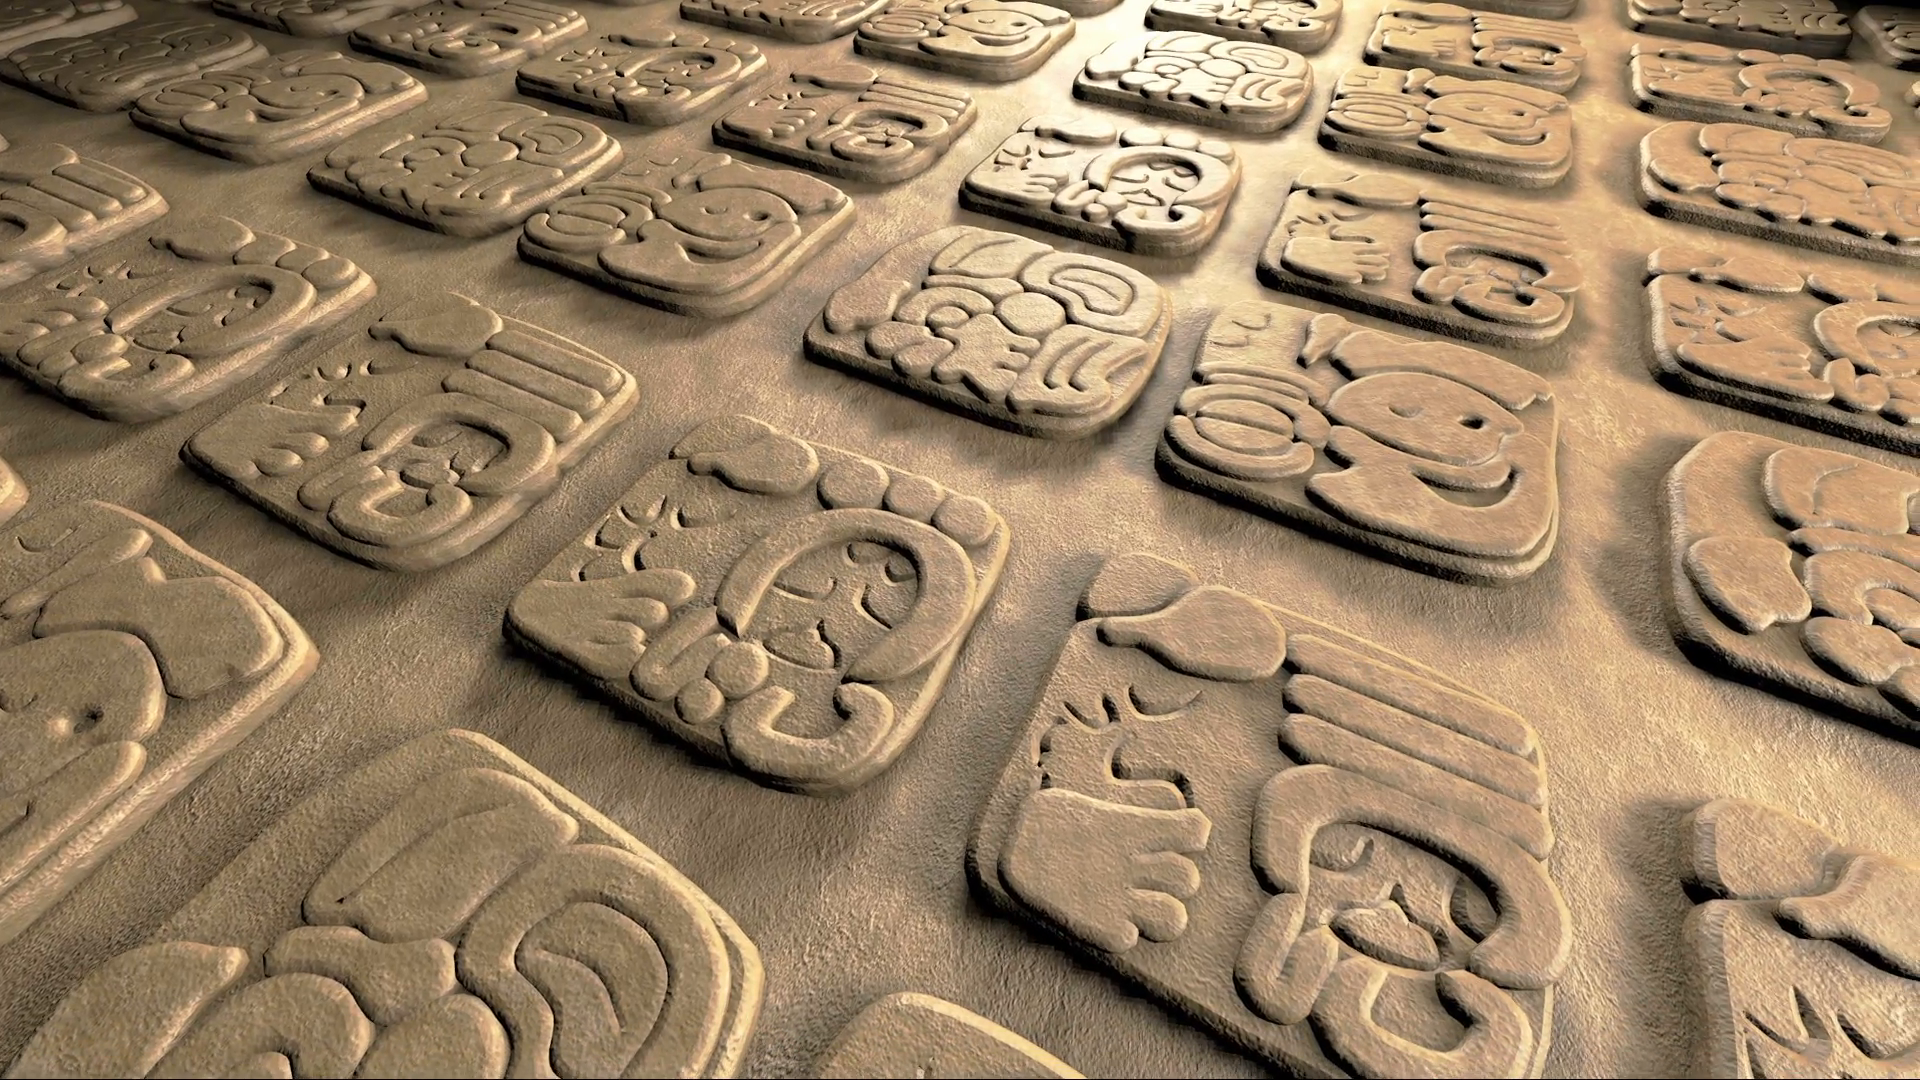 ancient mayan glyphs